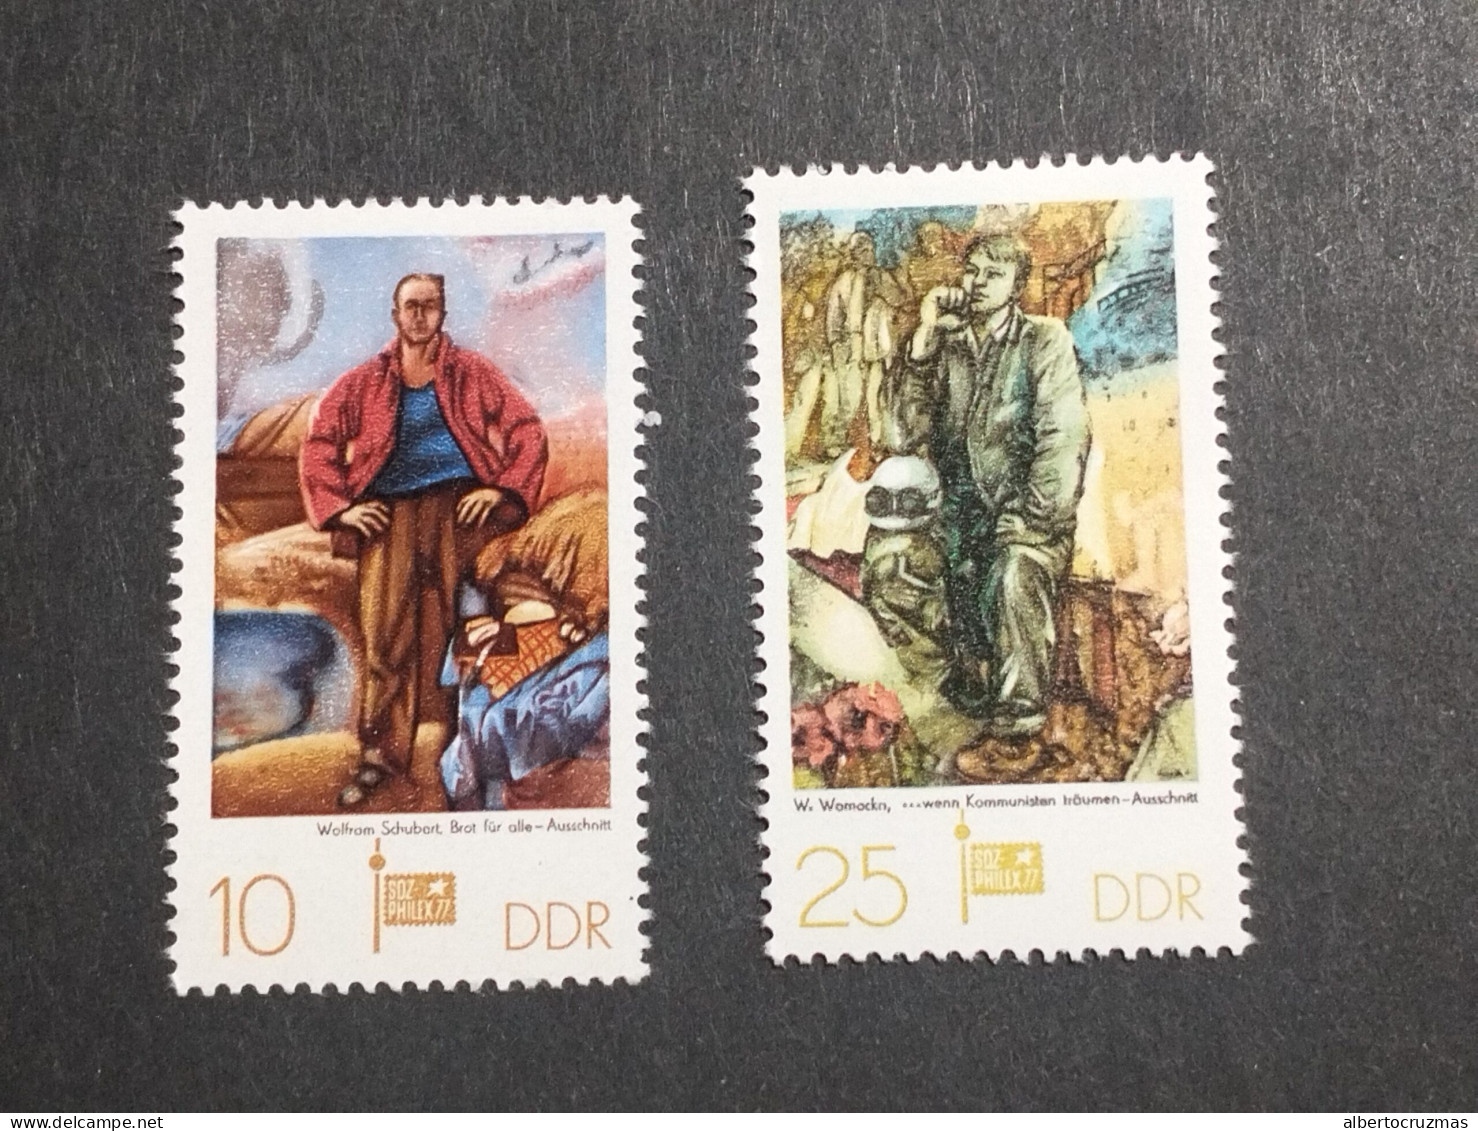 Alemania DDR  SELLOS  Yvert 1922/3 SELLOS Socialismo NUEVOS *** Año 1977 Serie Completa  - Unused Stamps